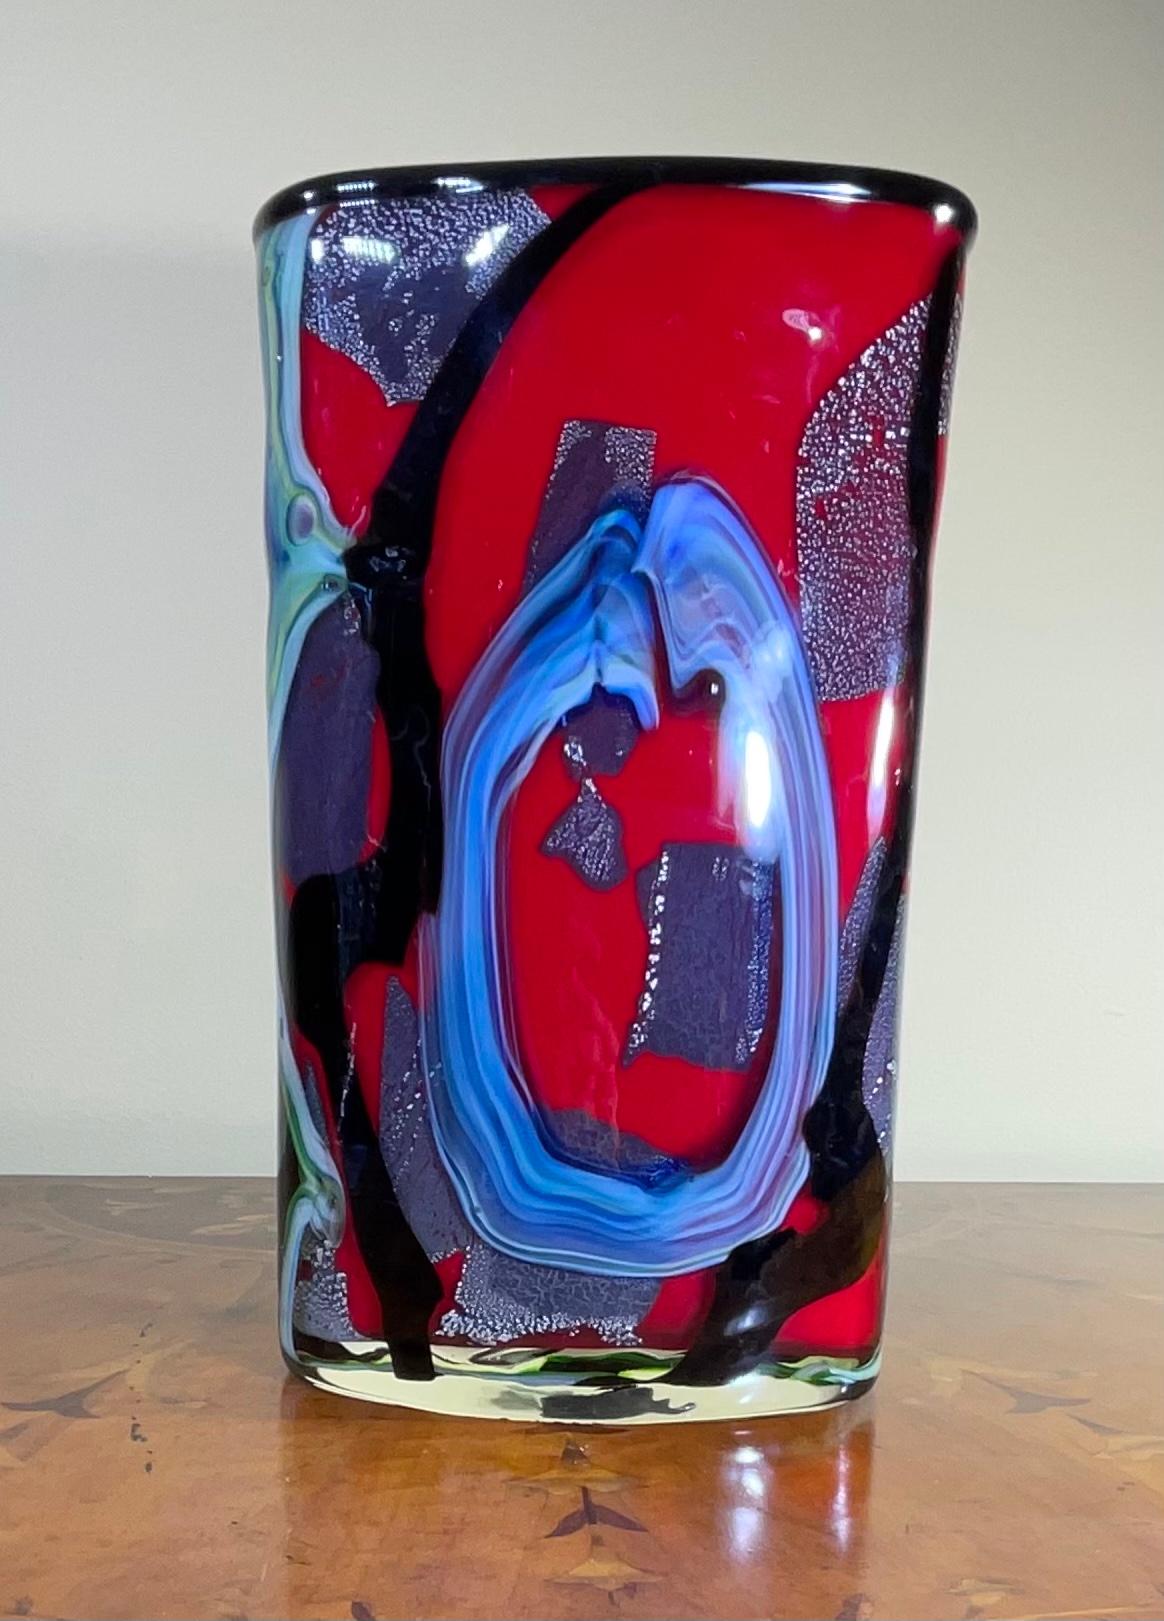 Vase élégant soufflé à la main Studio Murano verre, de caractériser l'unicité des couleurs vives de garish-bleu, rouge et vert agrémenté de l'utilisation de la poussière d'argent, qui crée une texture suggestive de formes et de couleurs, tous dans